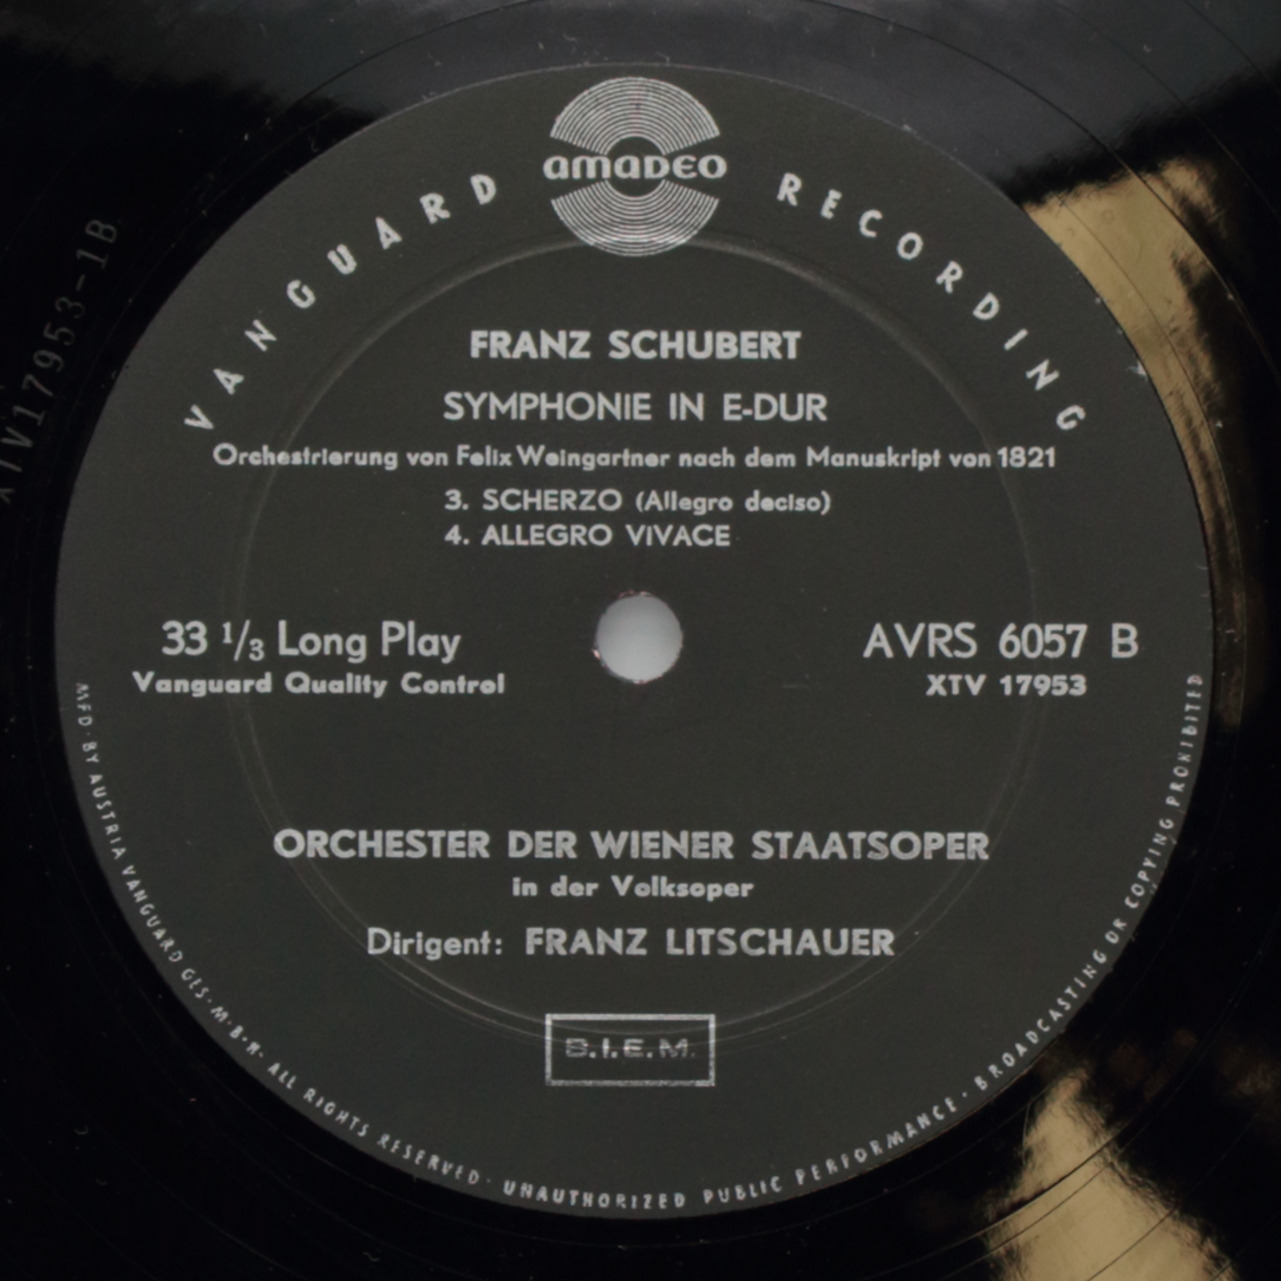 Schubert: Symphonie in E-dur